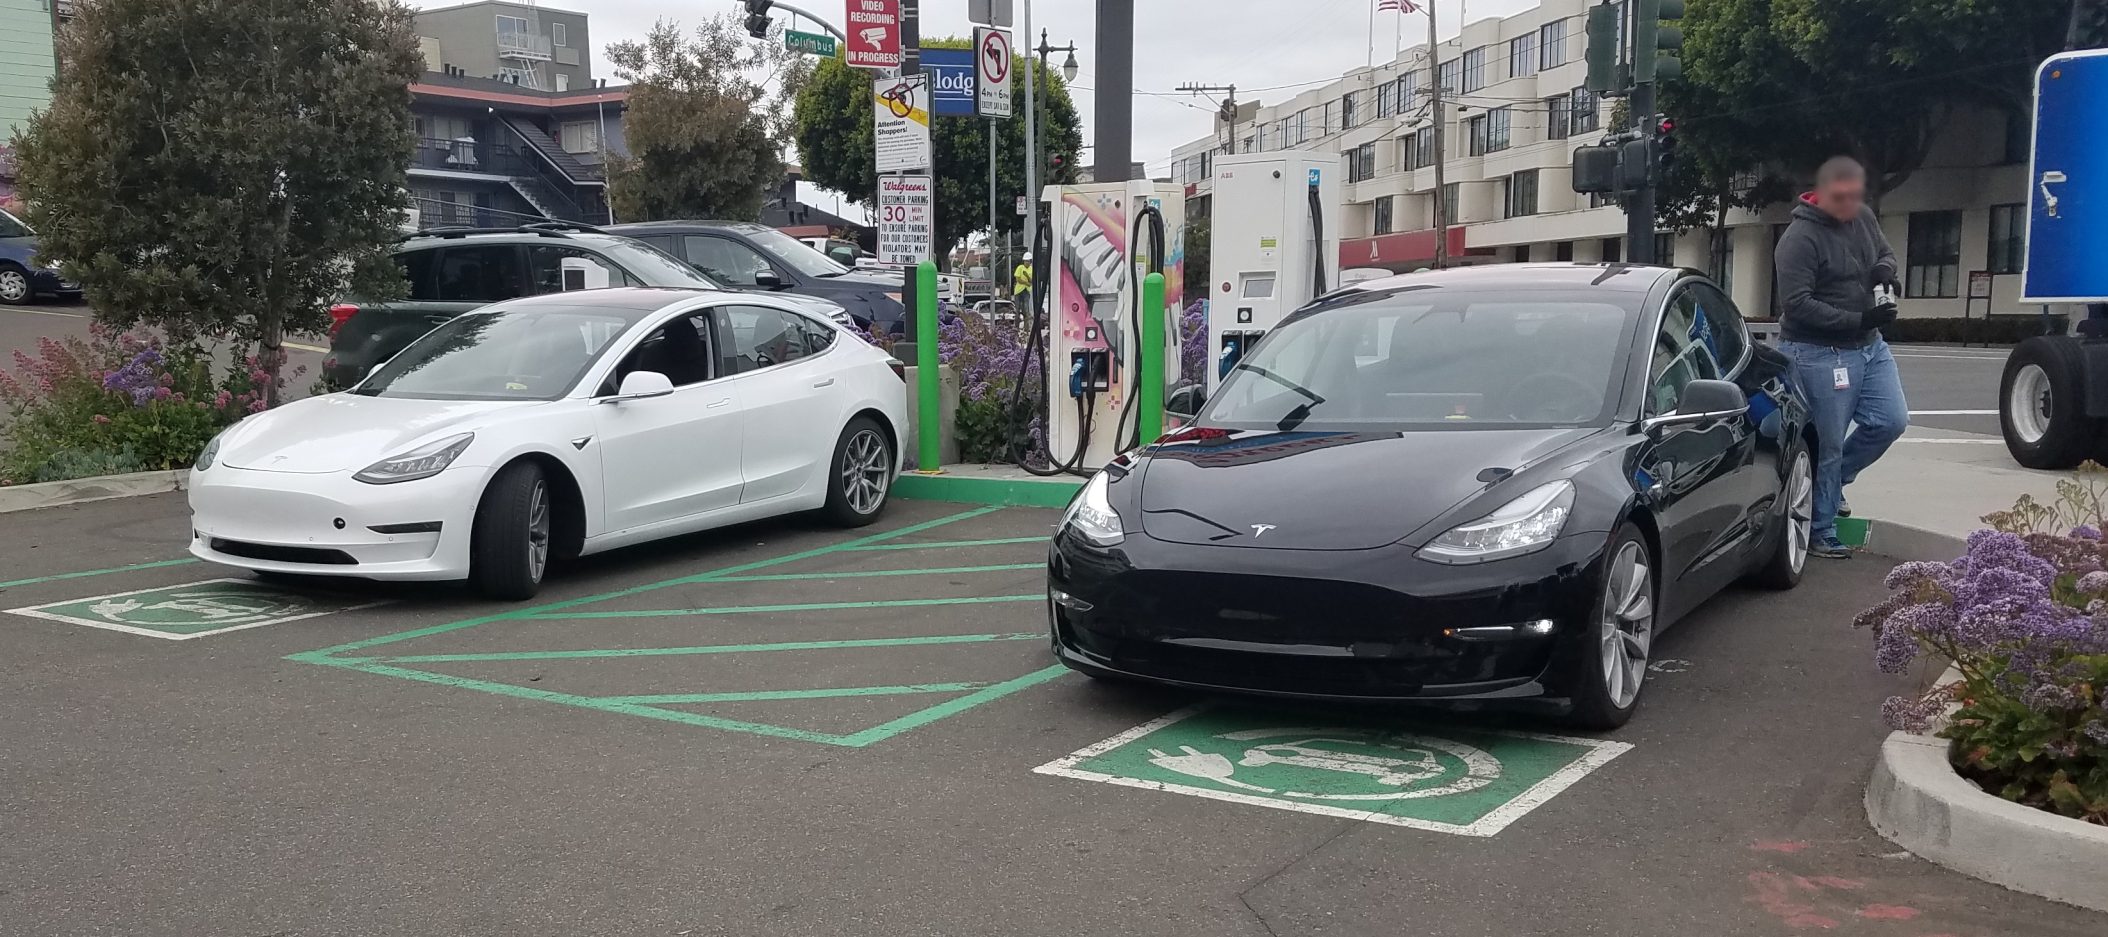 vogel nieuwigheid aanbidden A look at Tesla Model 3 charging options - Electrek